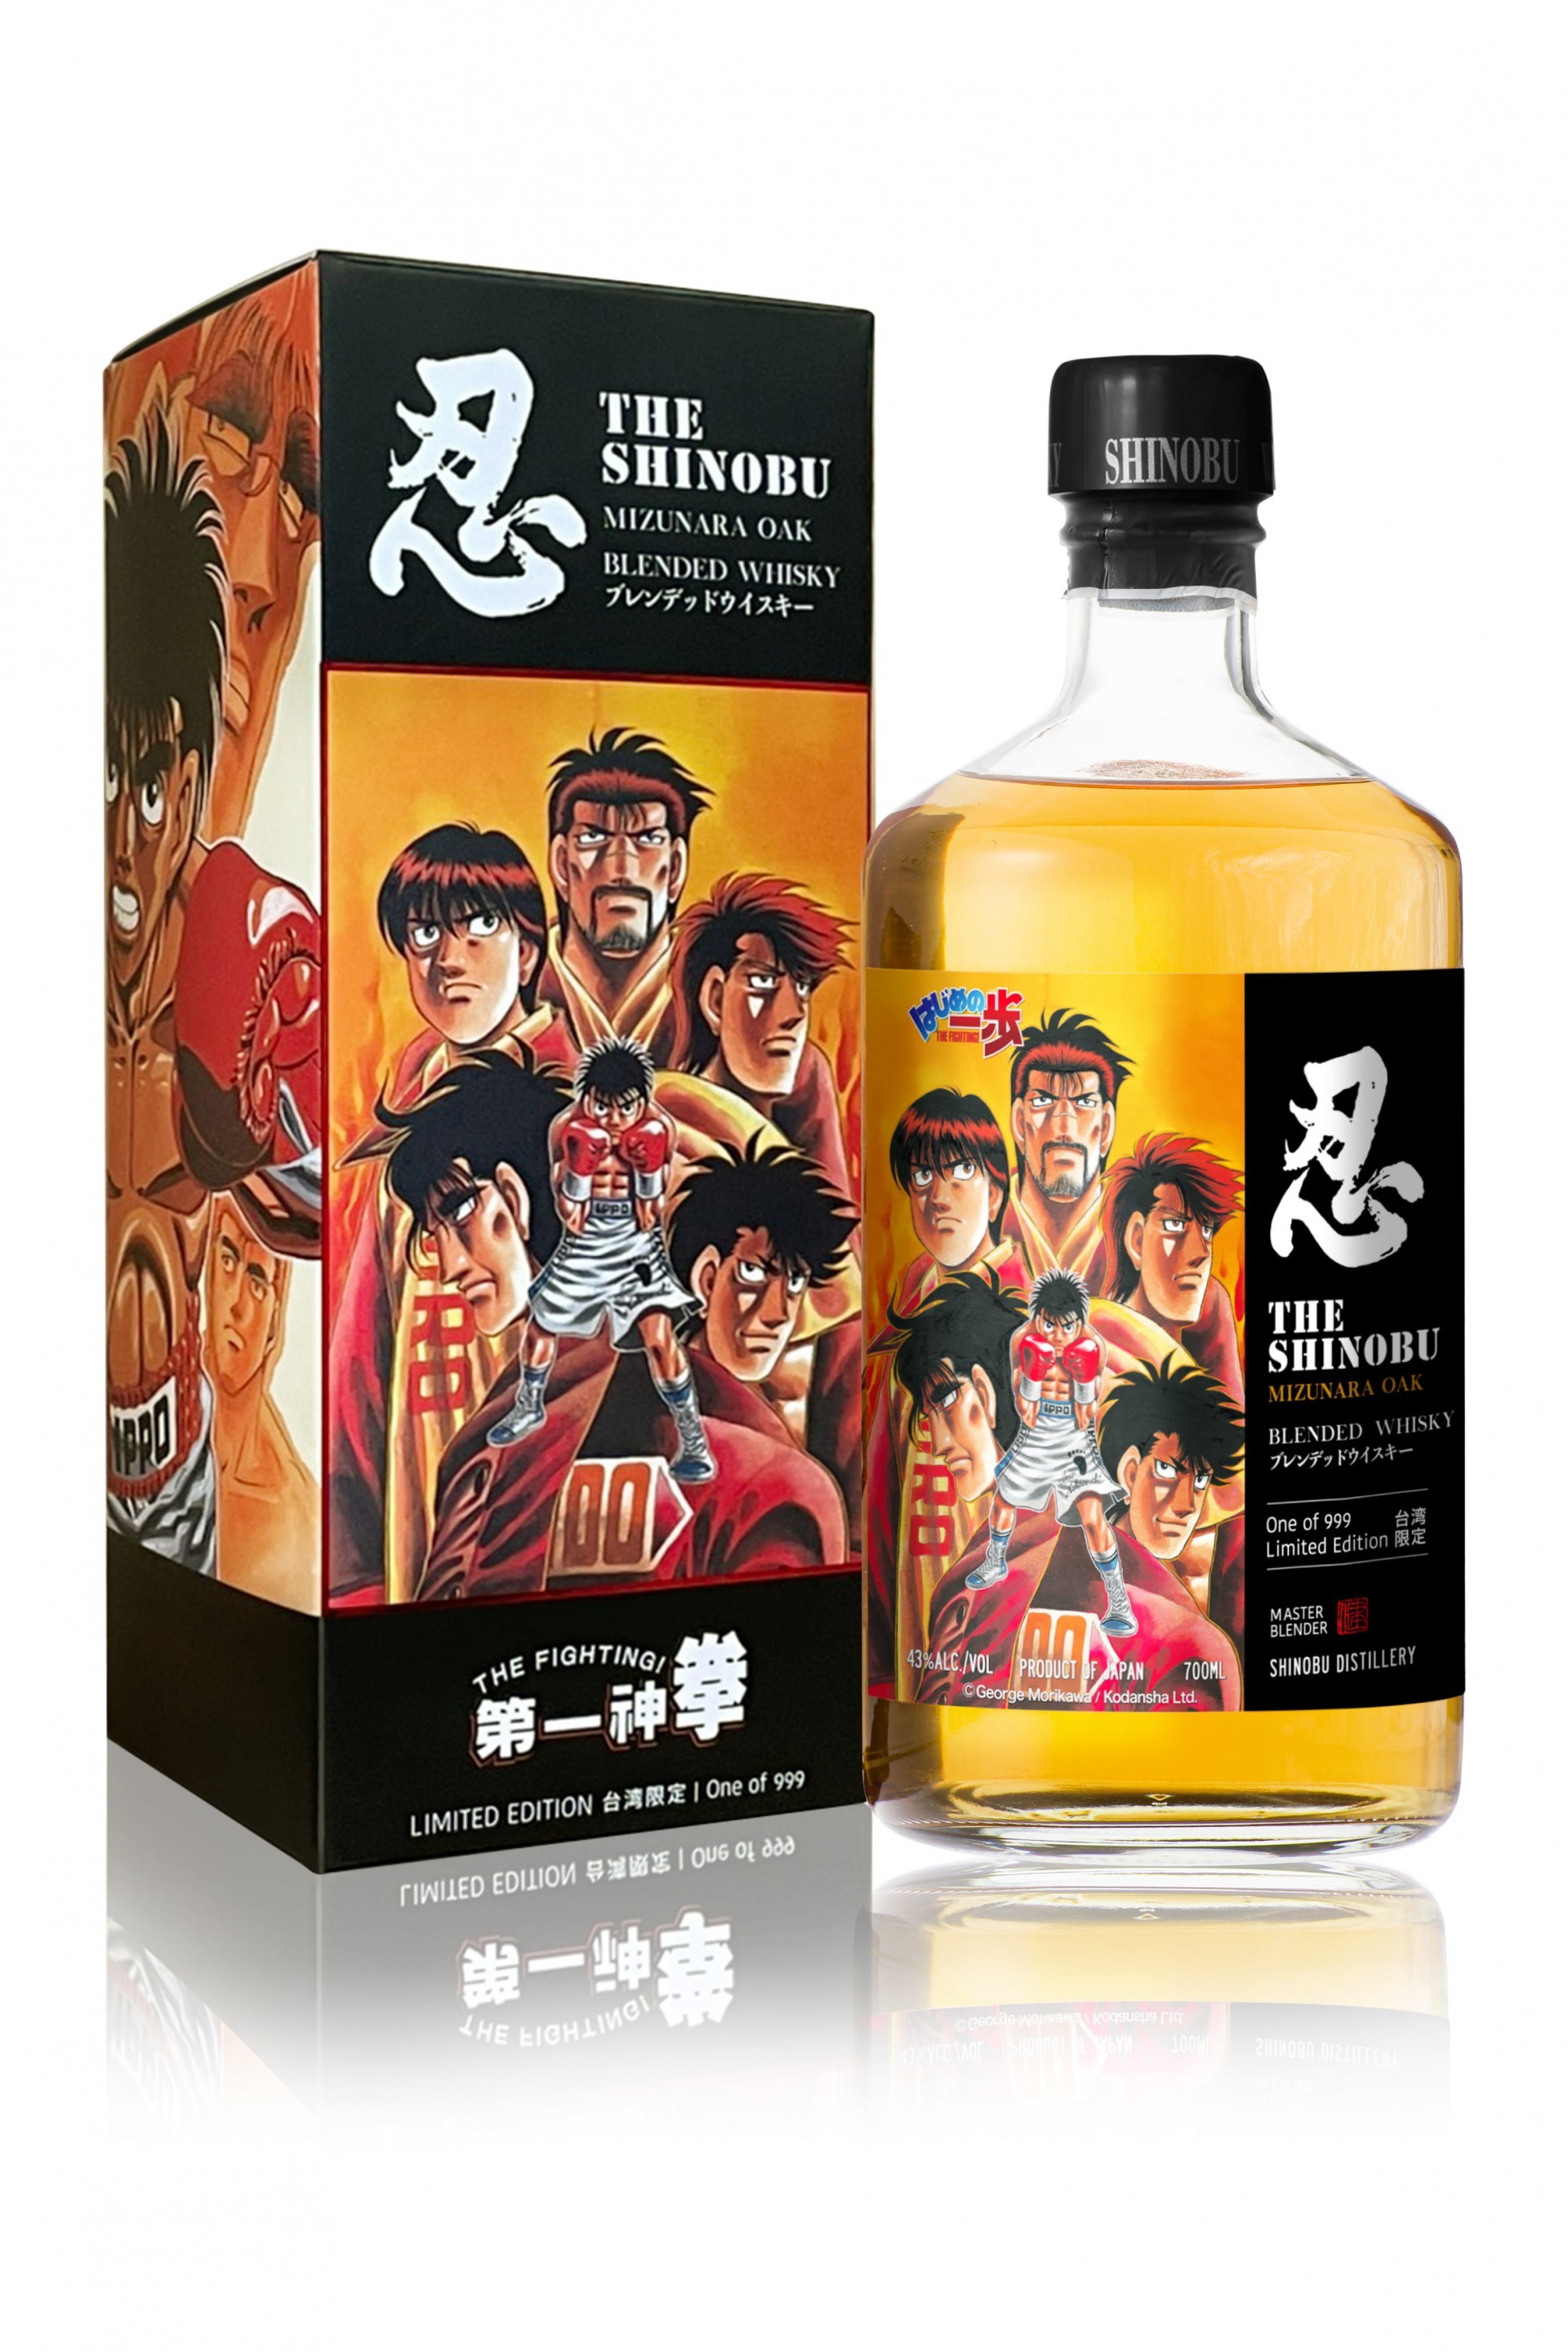 忍 SHINOBU 與《第一神拳》臺灣限定聯名威士忌即日起 7-11 限量首賣